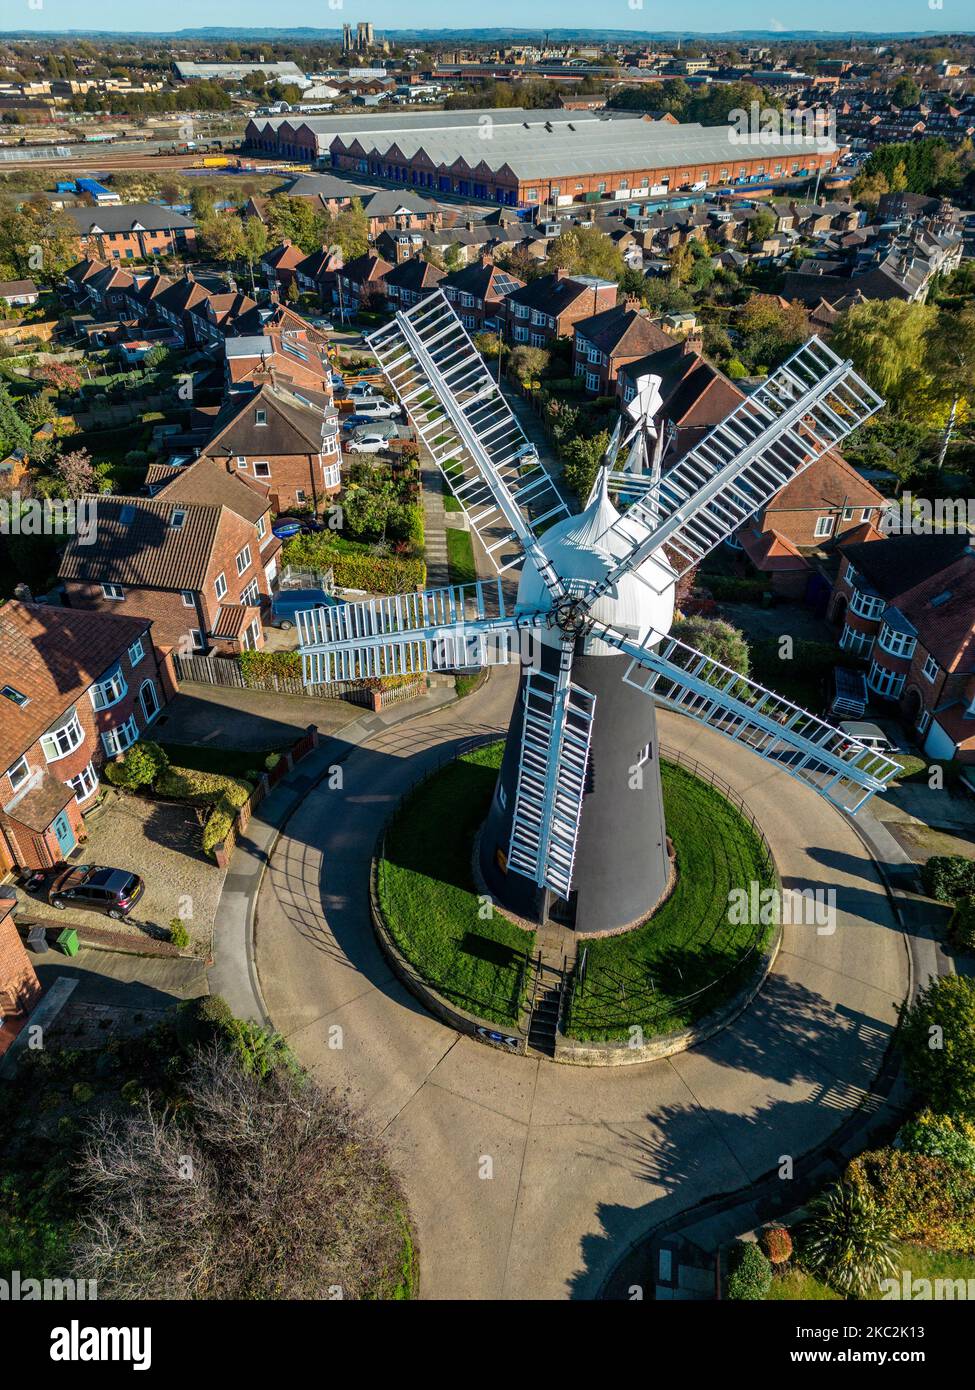 Holgate Windmill nella città di York nel Regno Unito. Costruito nel 1770. Dopo il restauro, il mulino è ora in pieno stato di funzionamento. York Minster Foto Stock